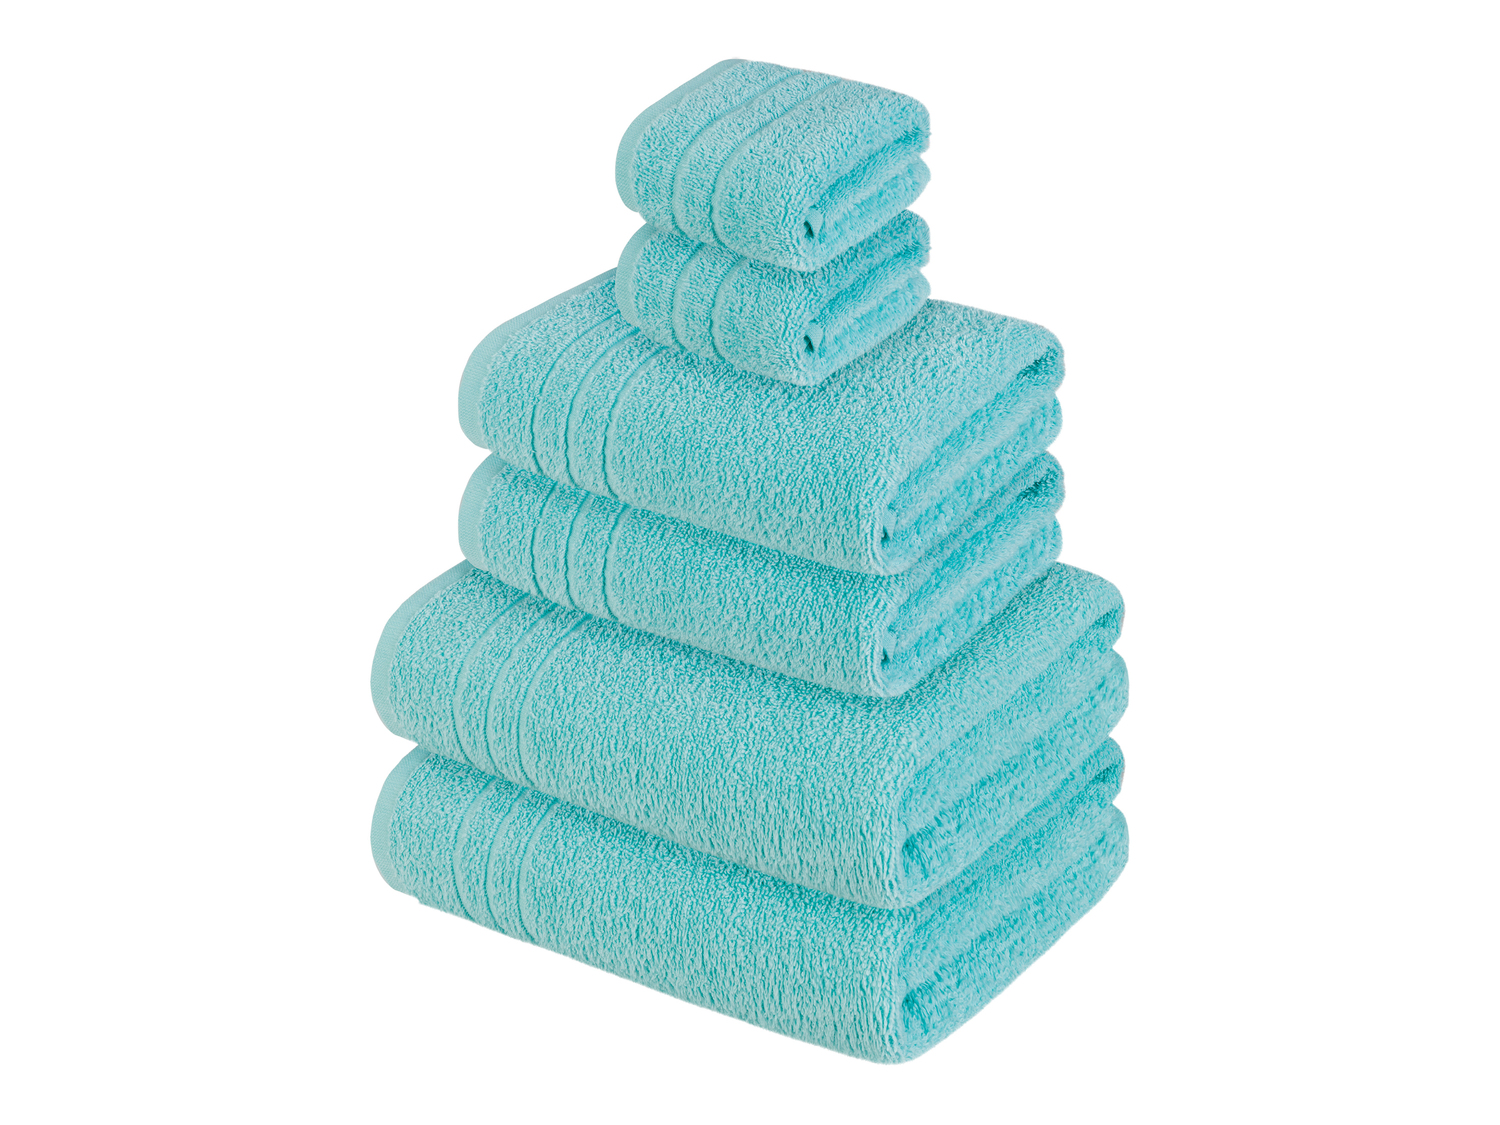 Set asciugamani Miomare, prezzo 9.99 &#8364; 
6 pezzi 
- Produzione ecosostenibile
- ...